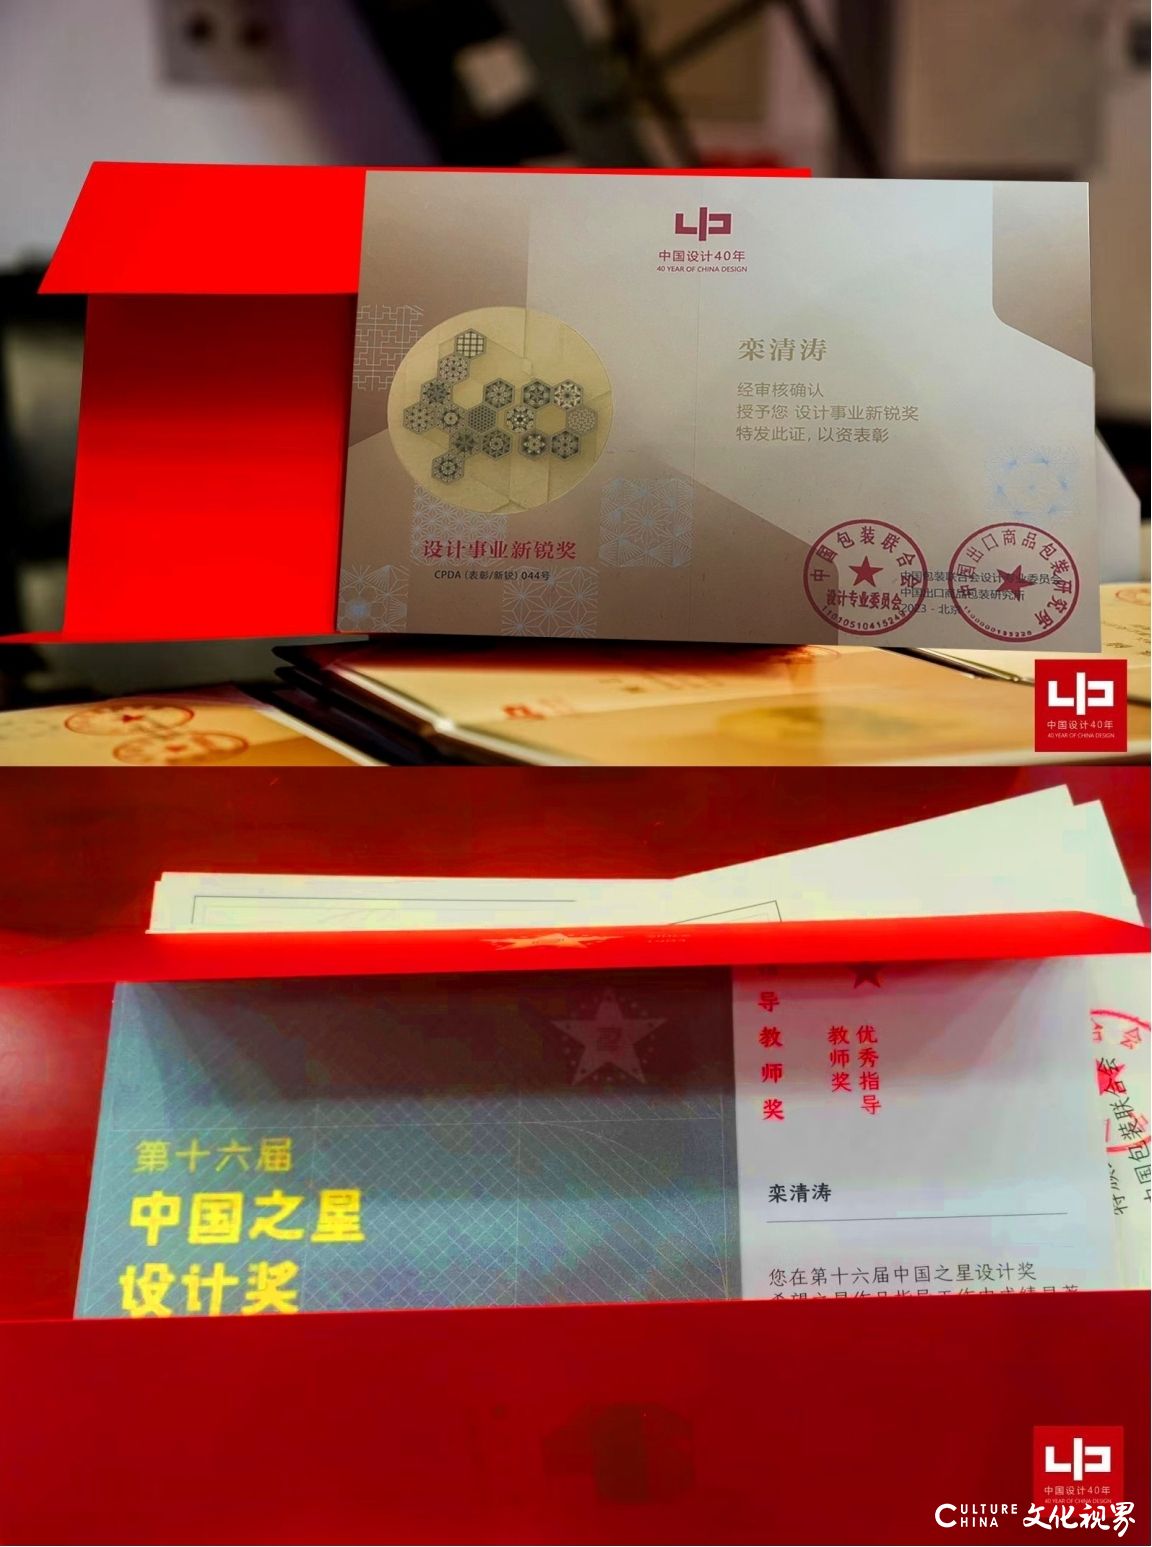 山东艺术学院师生荣获中国设计40年·中国之星设计奖多个奖项